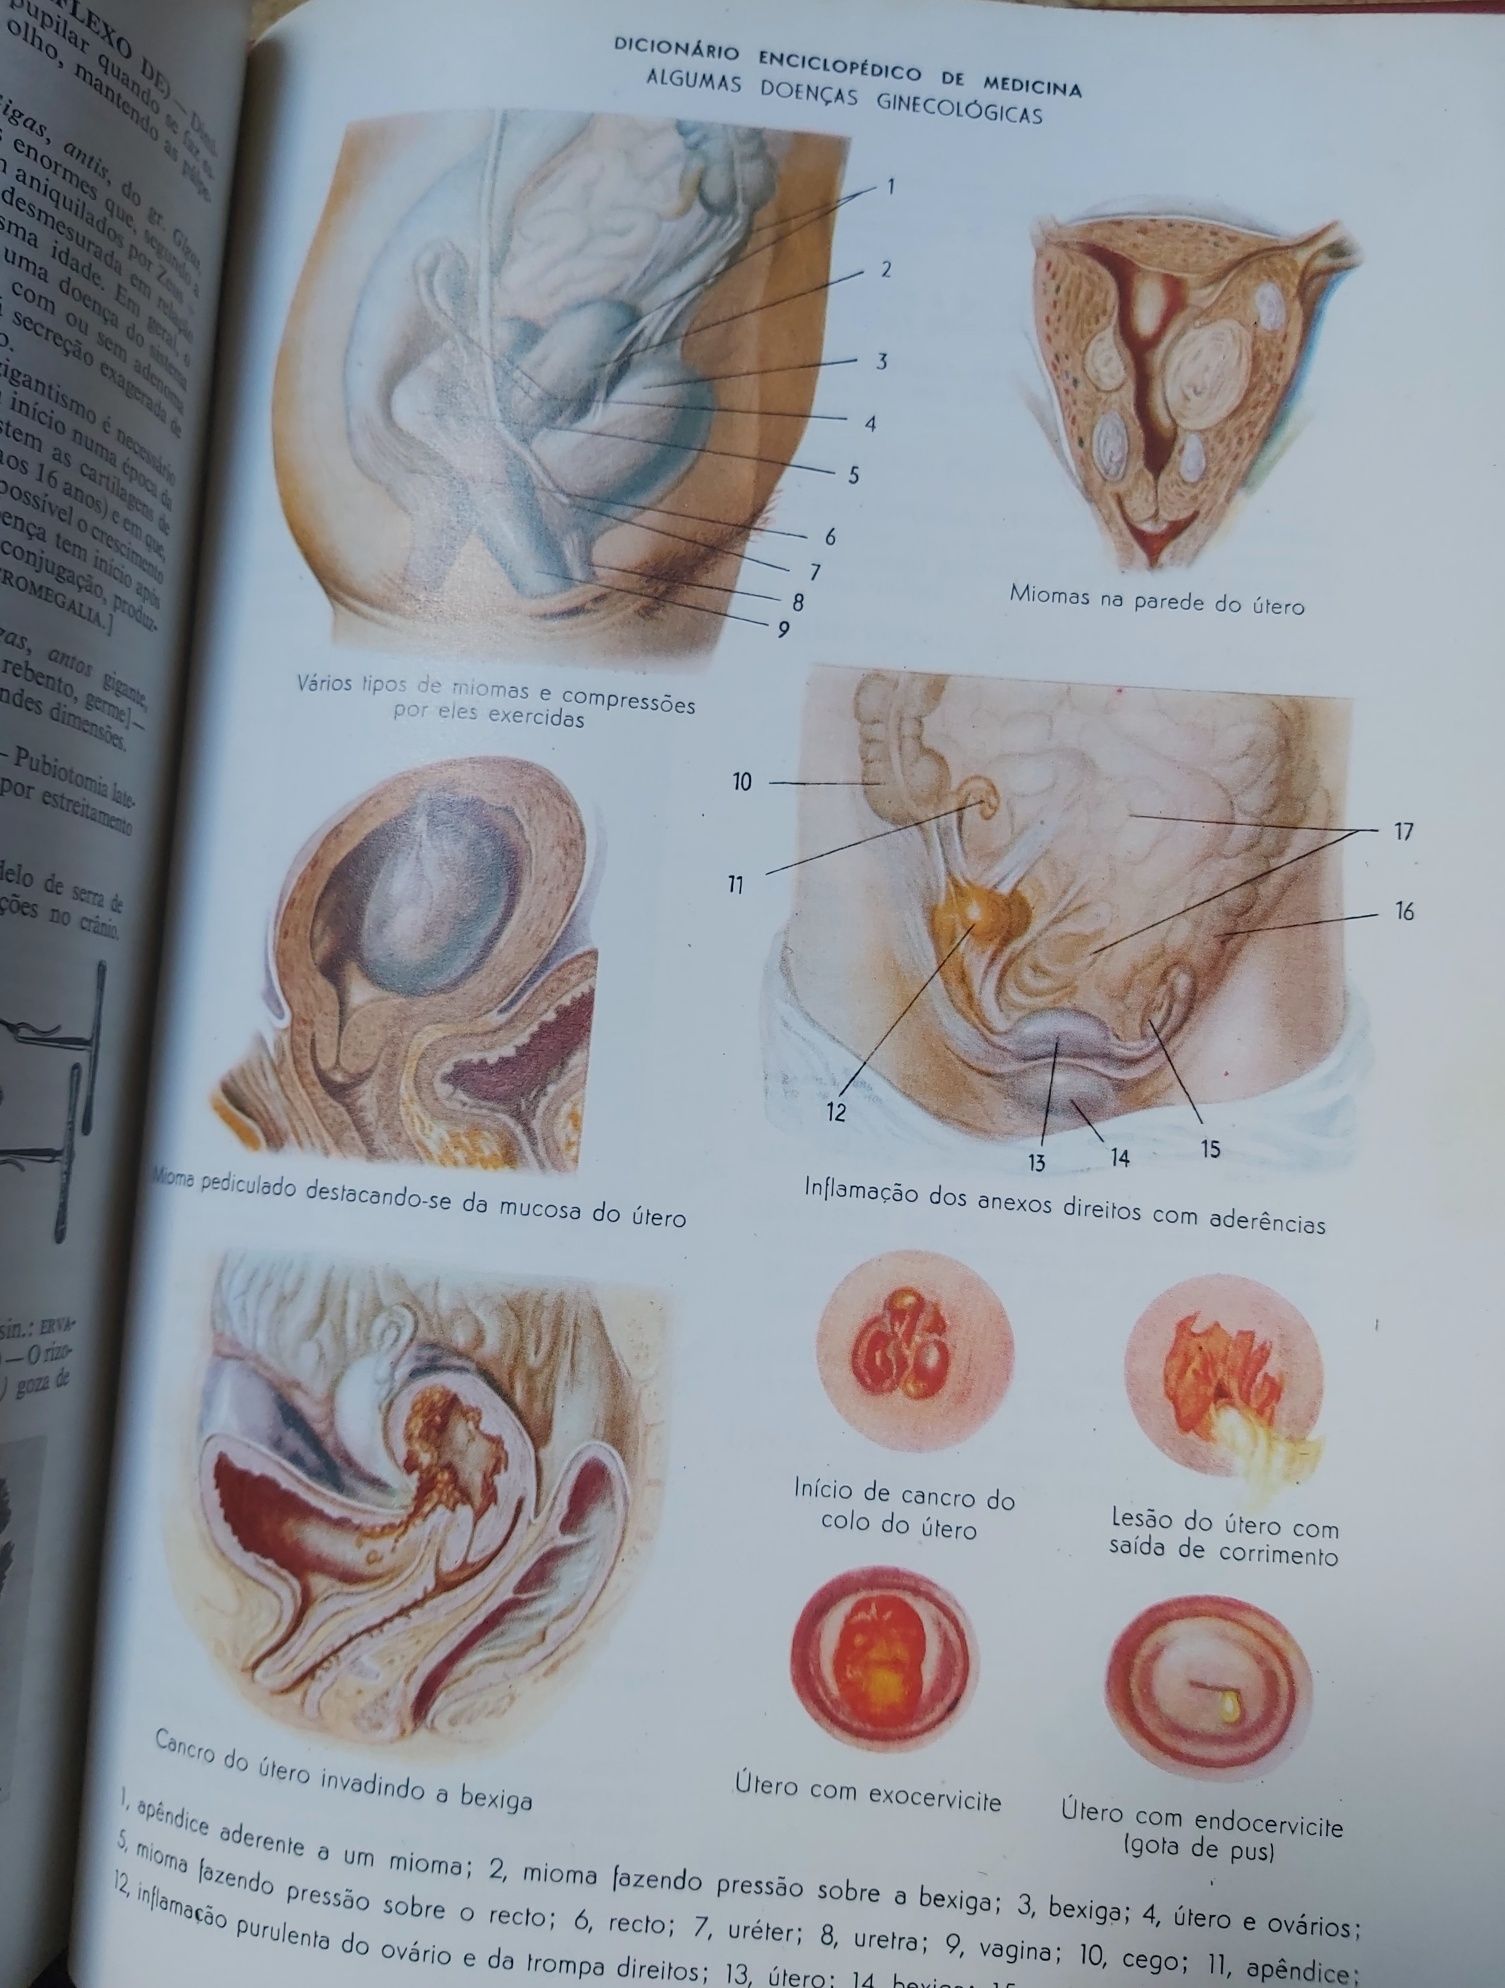 Dicionário enciclopédia médica 1977